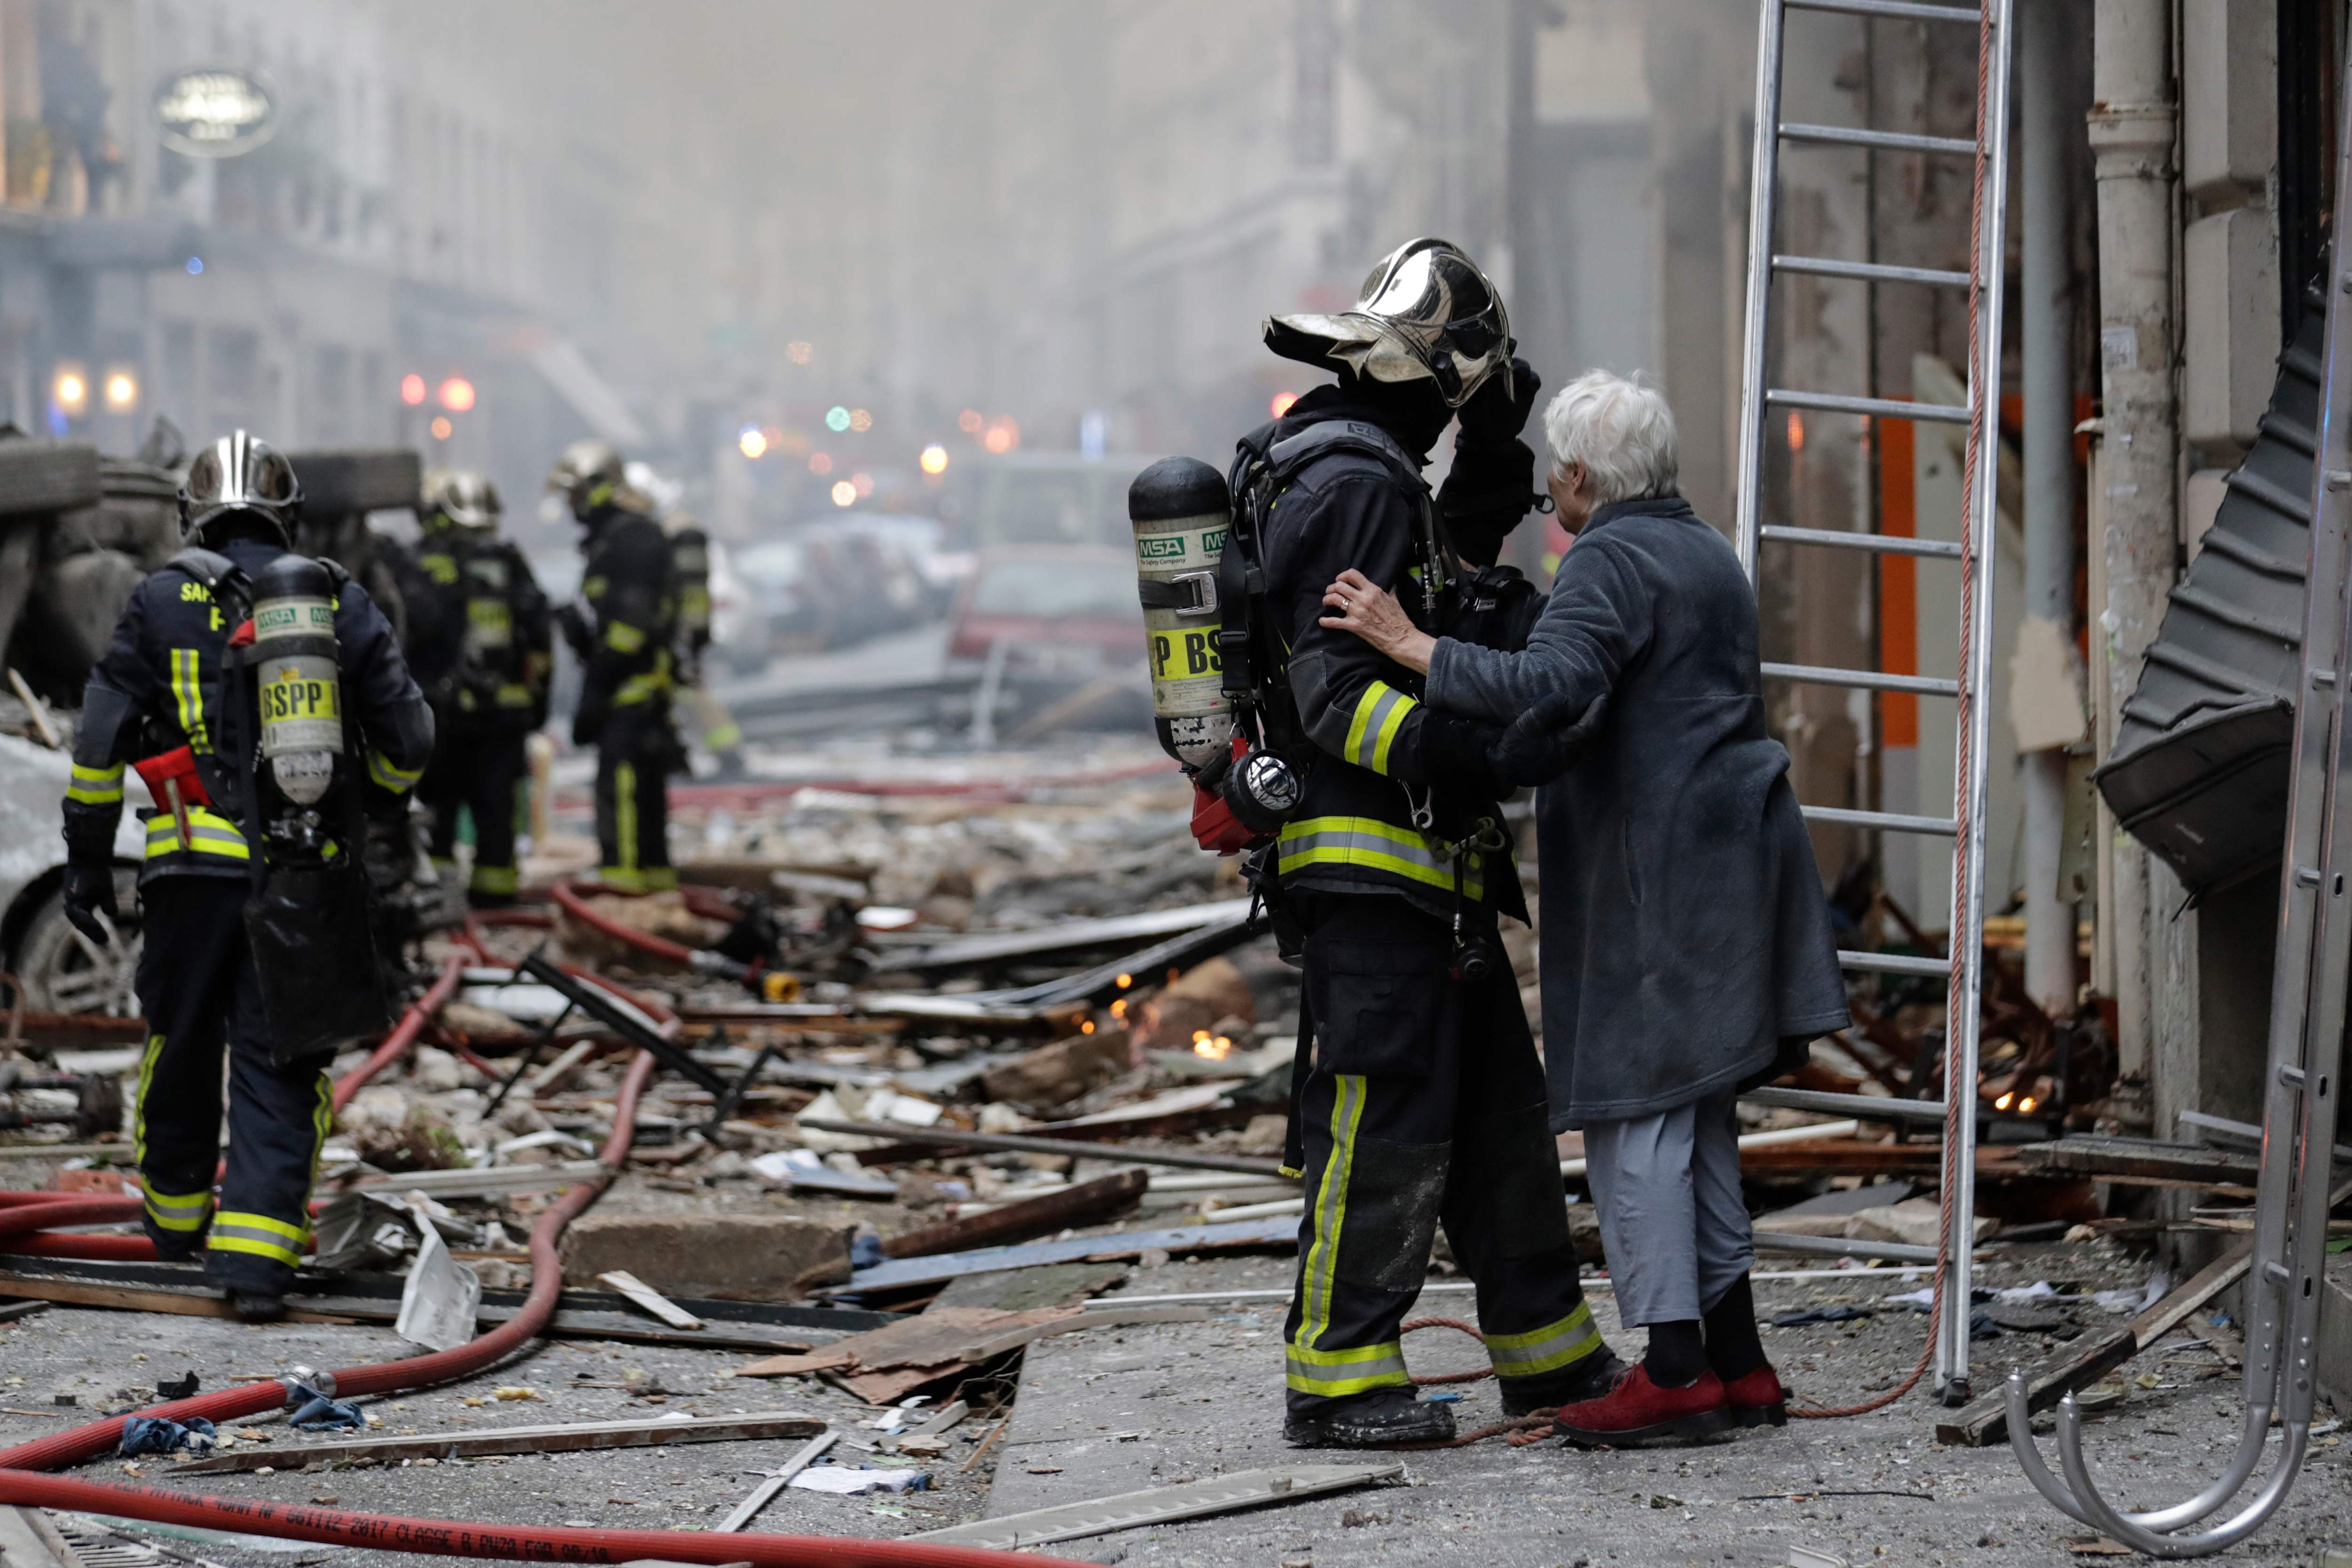 法国巴黎爆炸事件遇难人数升至4人